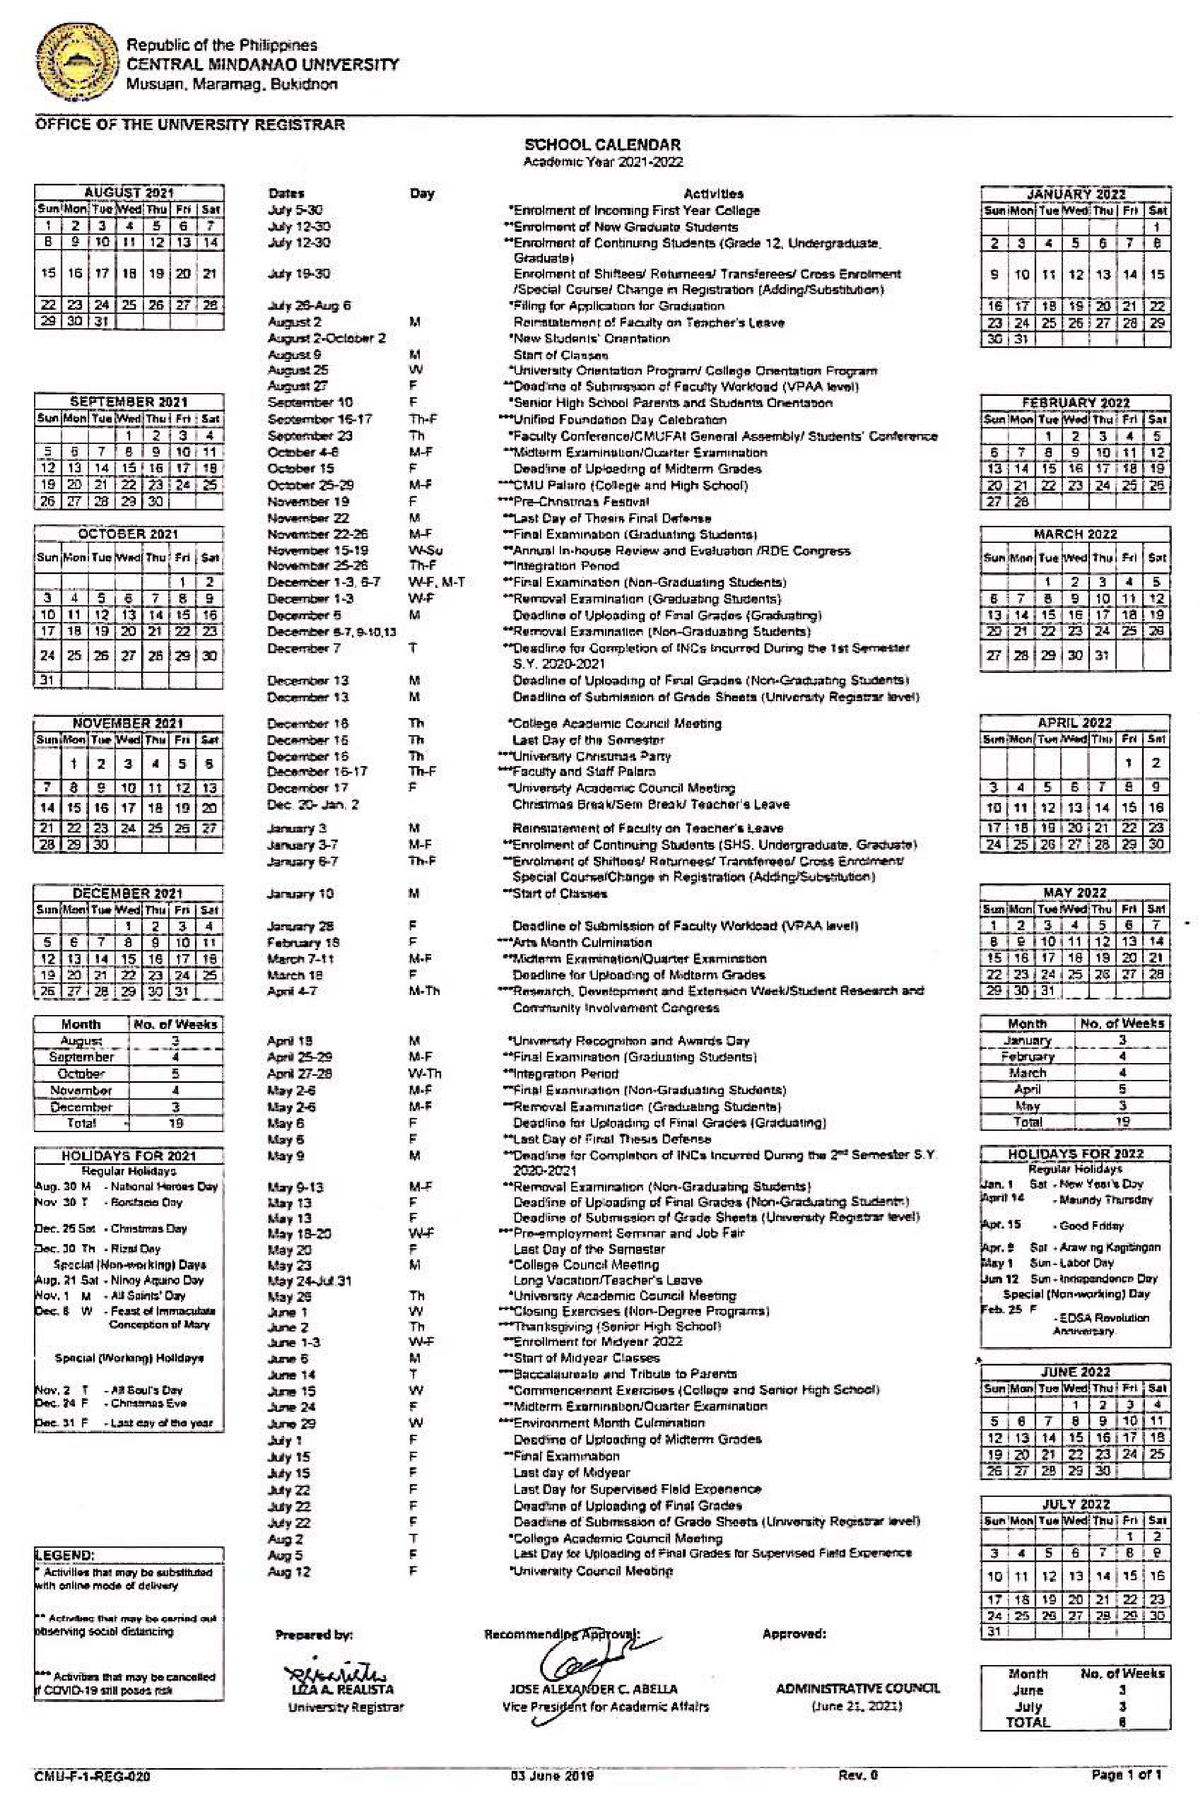 school-calendar-2021-schedule-education-studocu